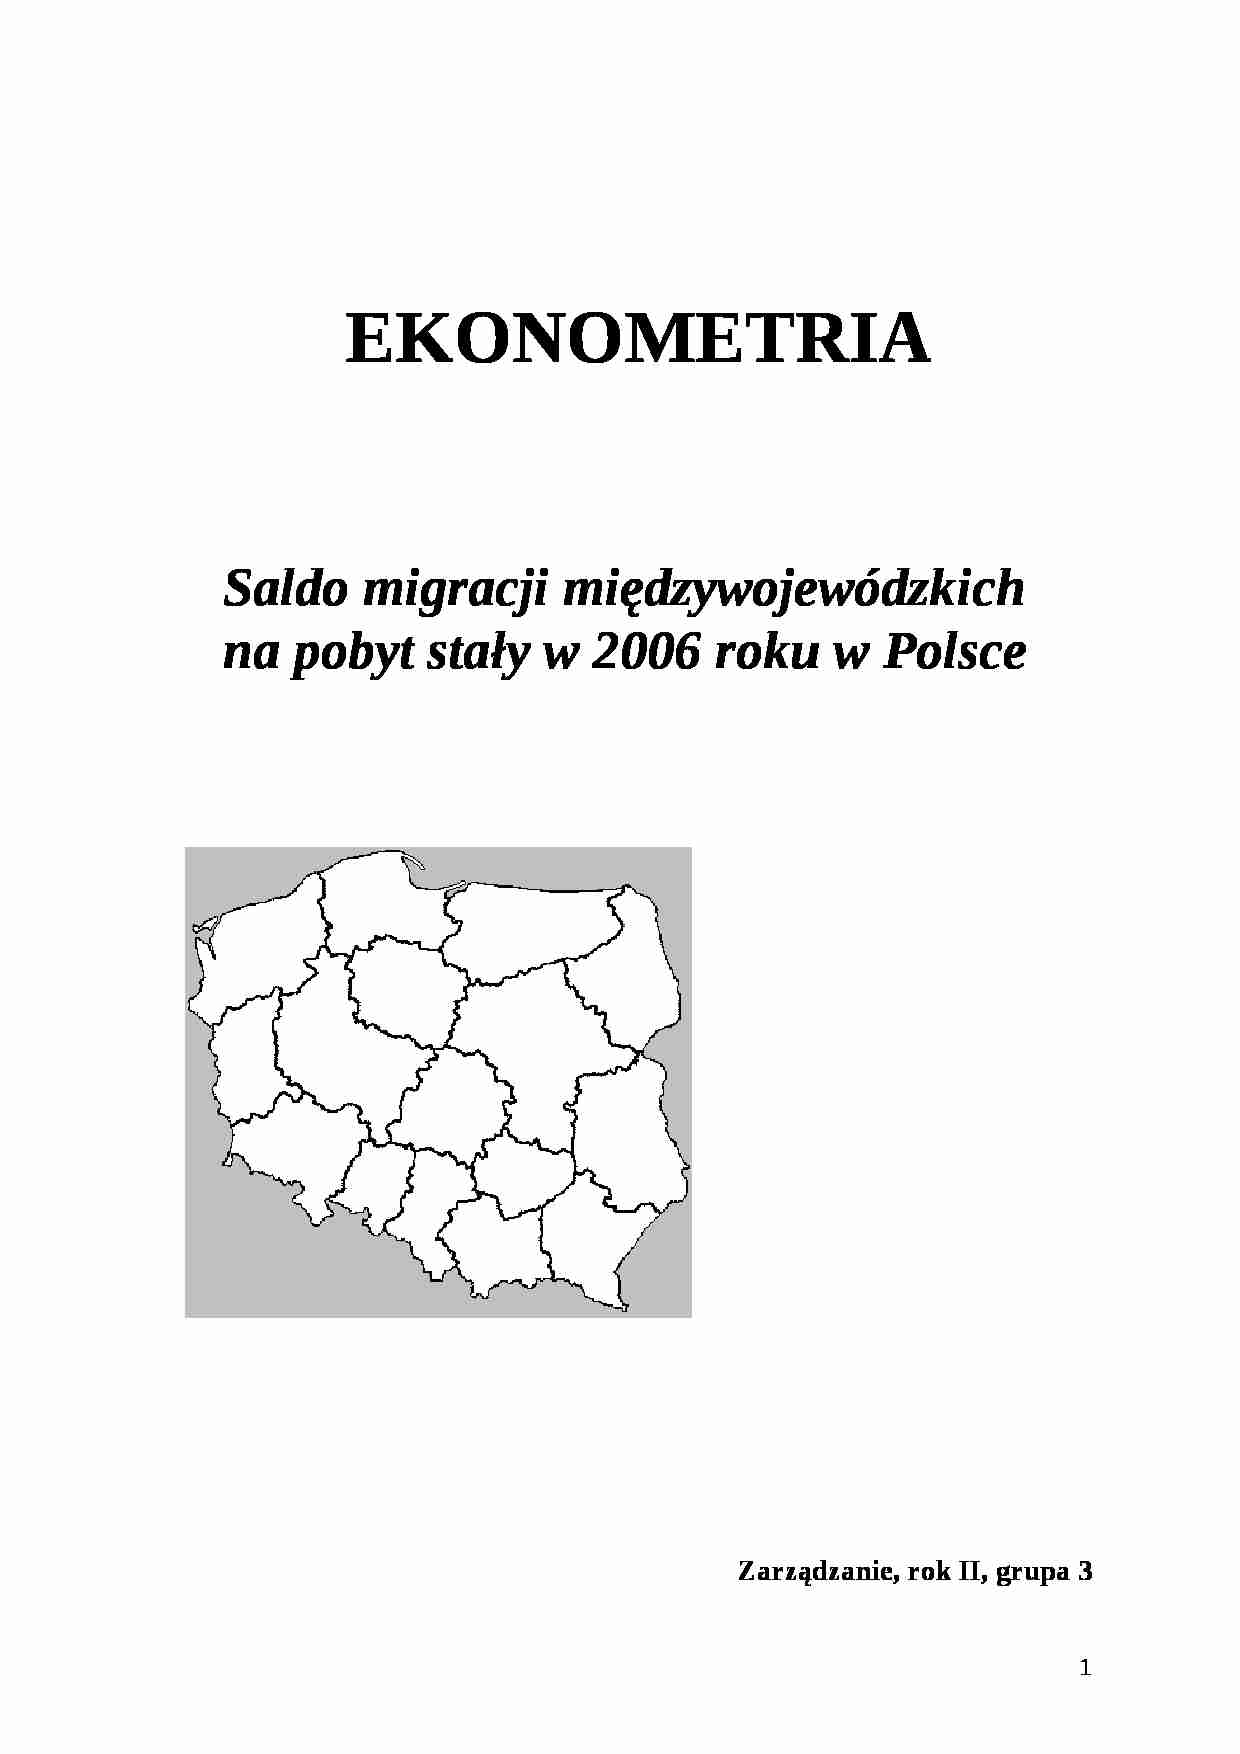 Ekonometria -Analiza Salda migracji międzywojewódzkich na pobyt stały w 2006 roku w Polsce - strona 1